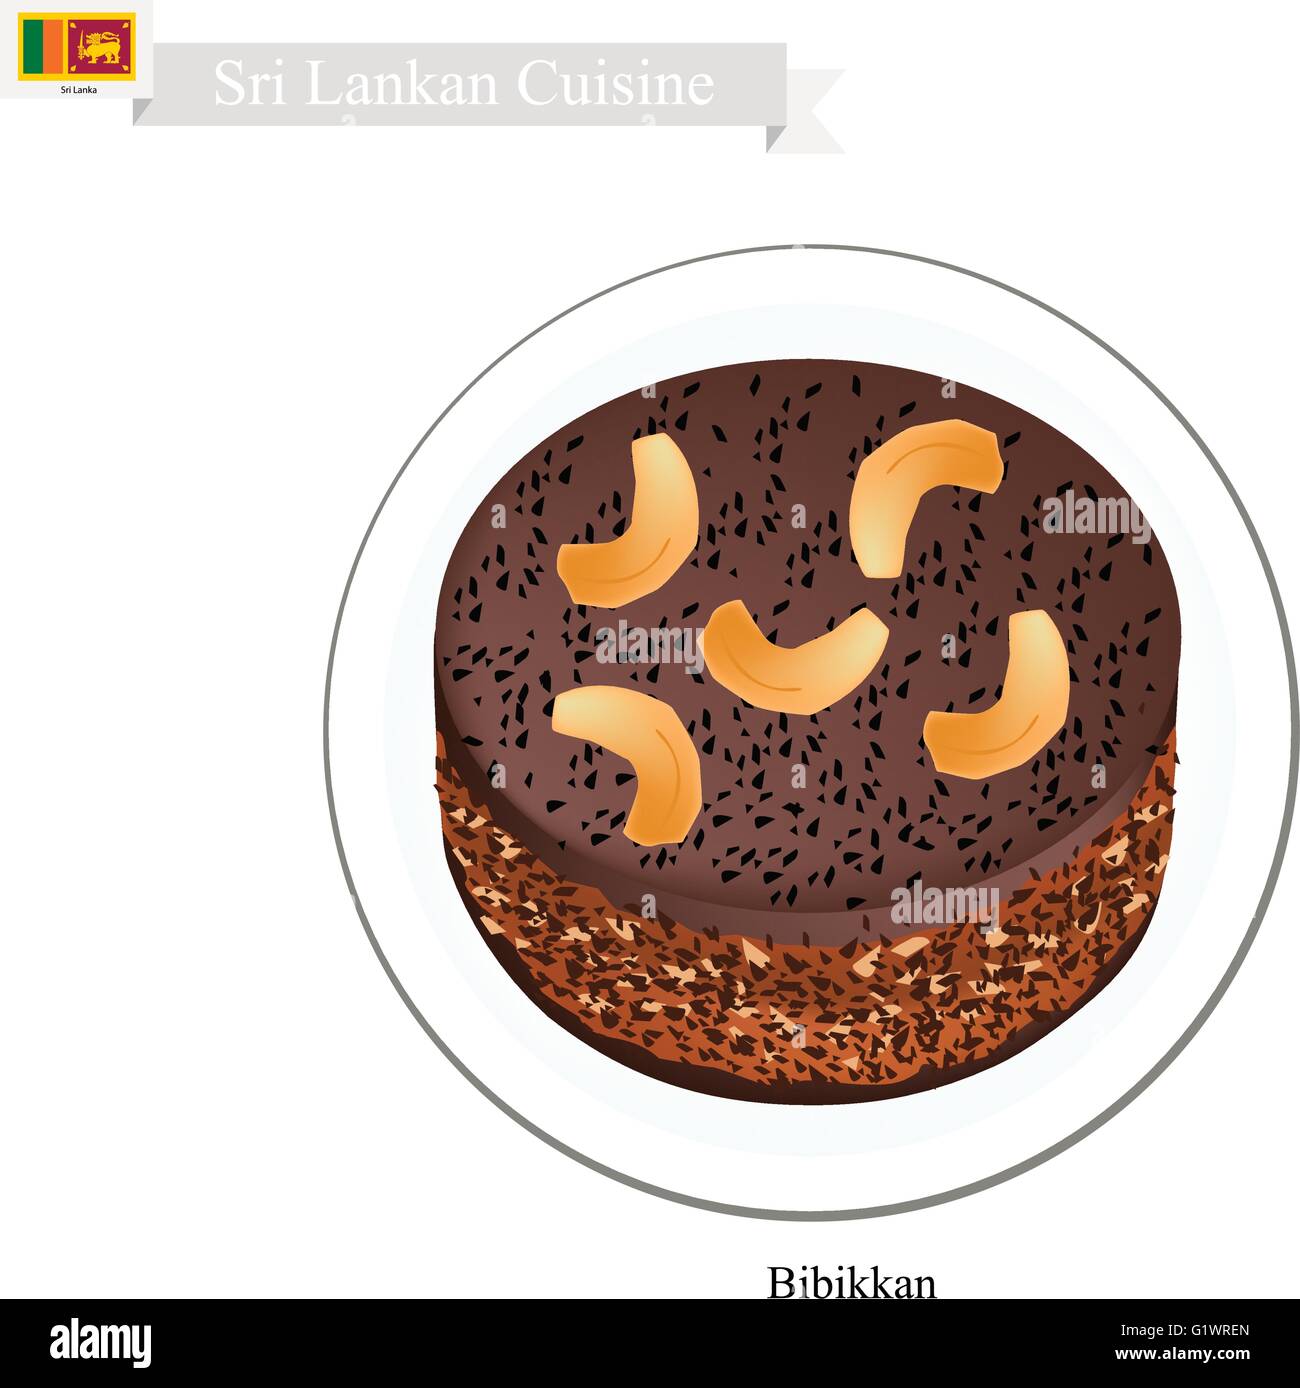 Une cuisine sri-lankaise, Bibikkan ou sombres et humides, traditionnel gâteau de noix de coco râpée, Jagré, fruits secs et de la semoule. L'un des T Illustration de Vecteur